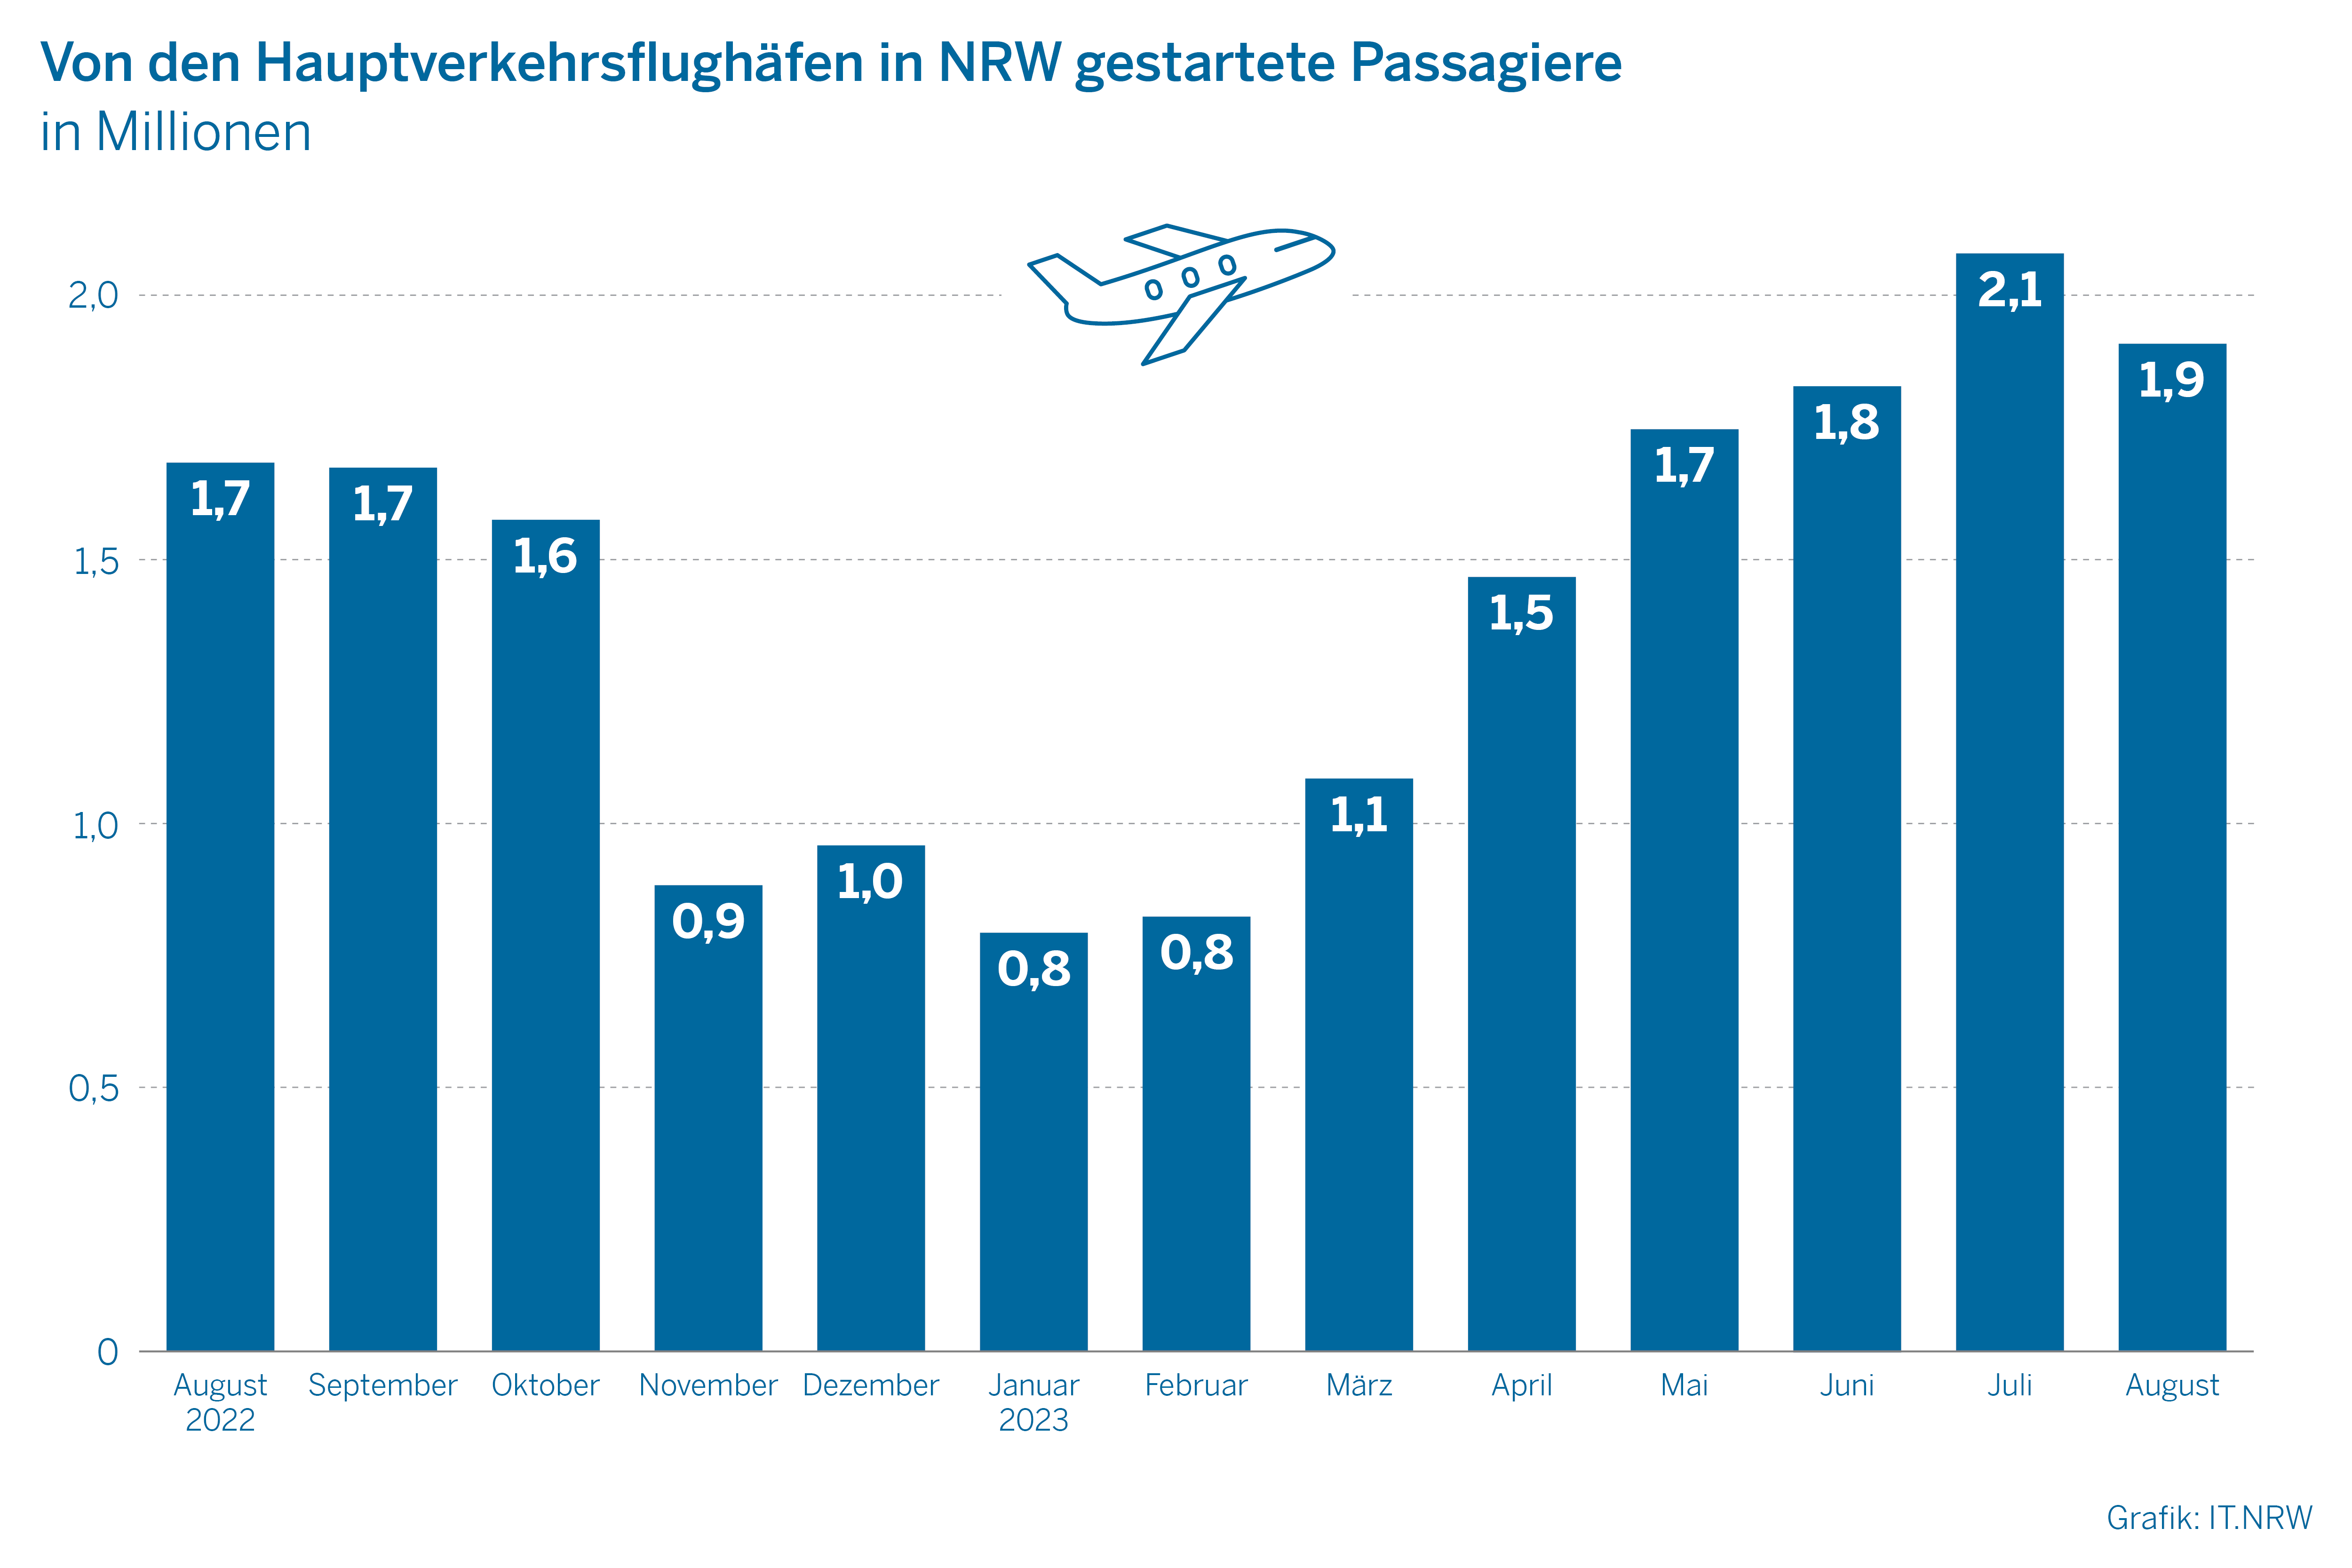 Von den Hauptverkehrsflughäfen in NRW gestartete Passagiere